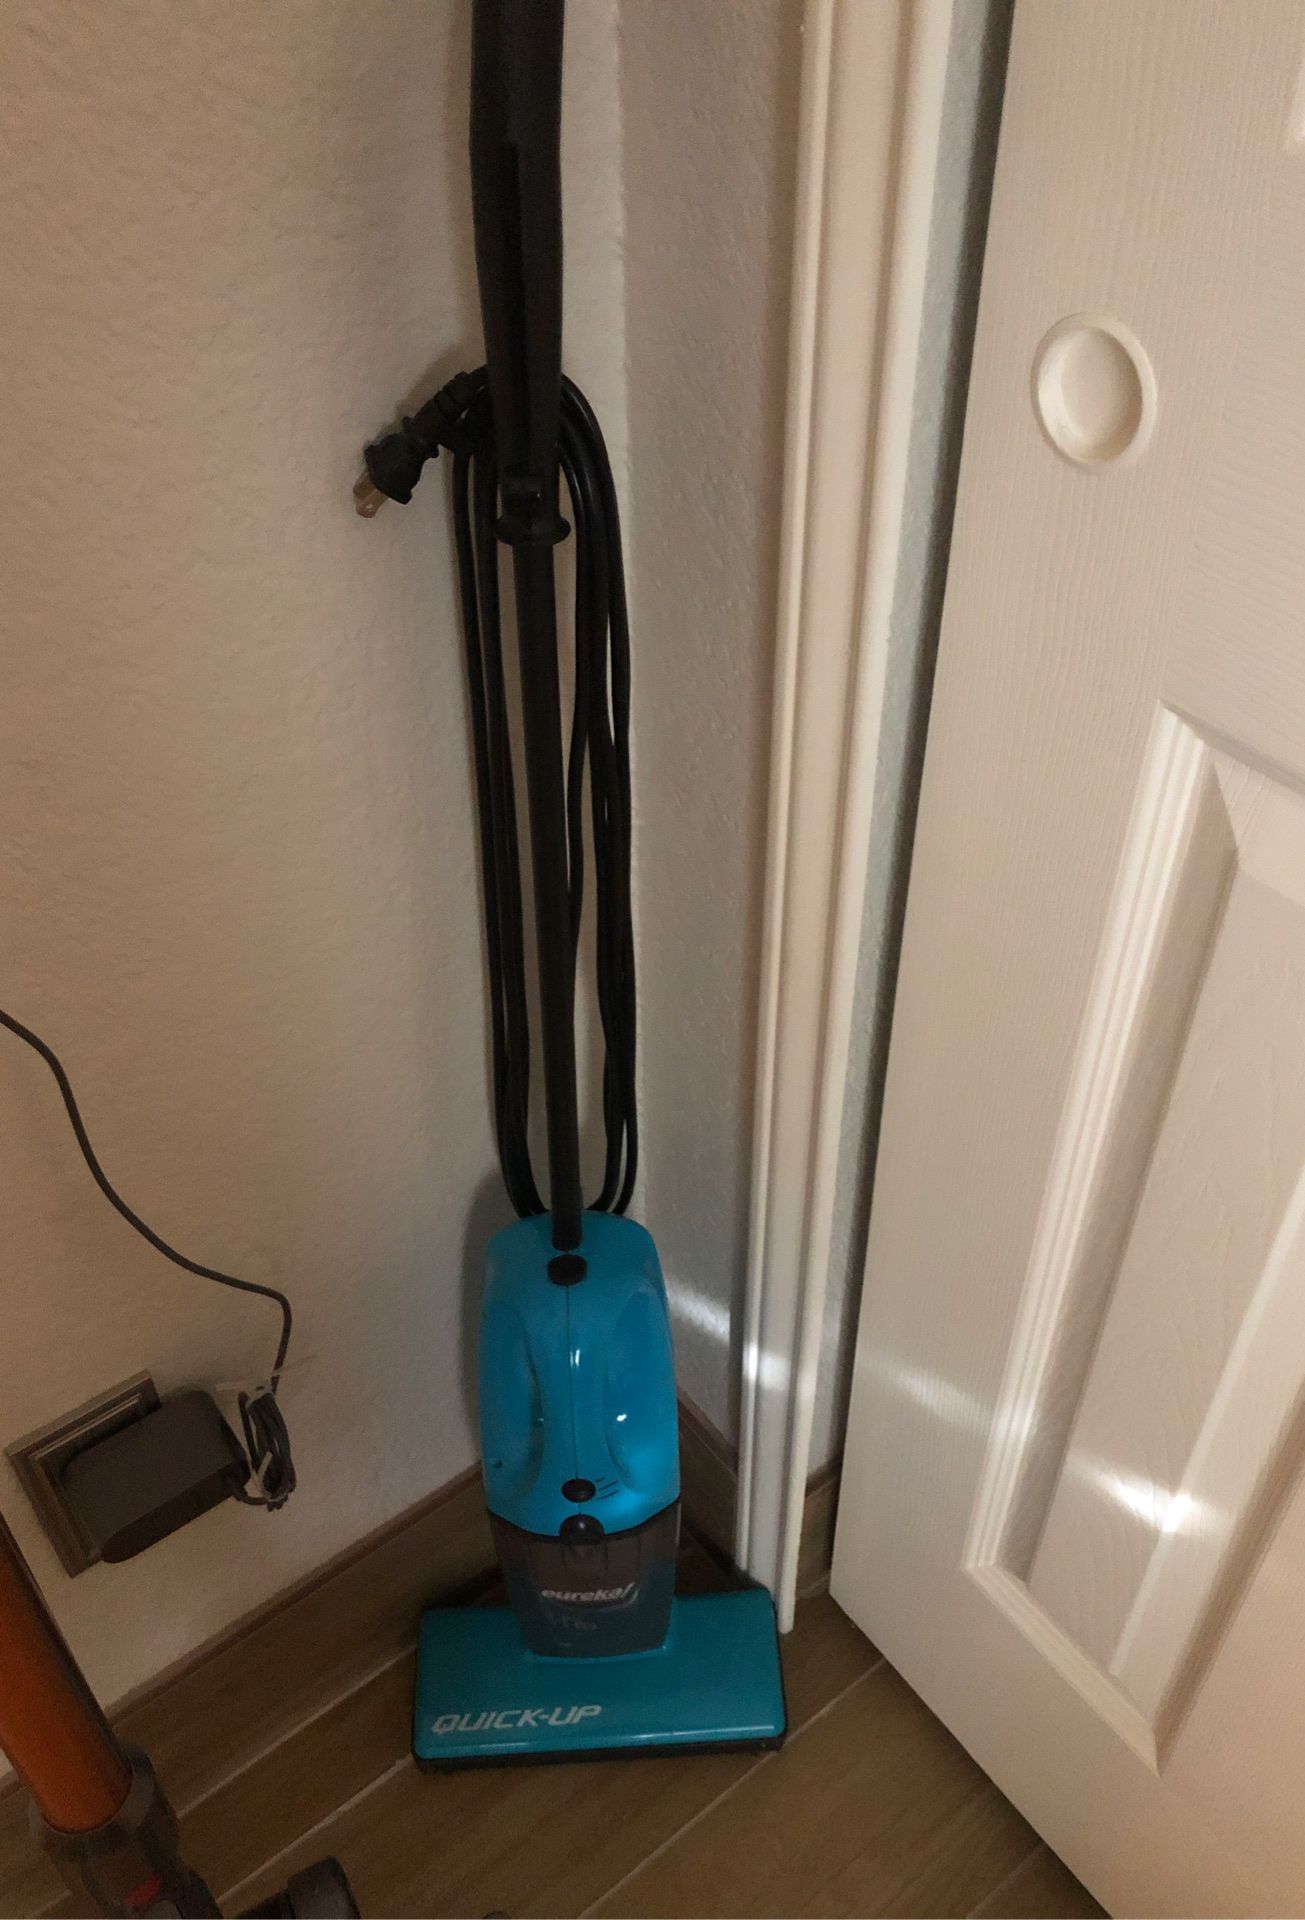 Quick up floor vacuum